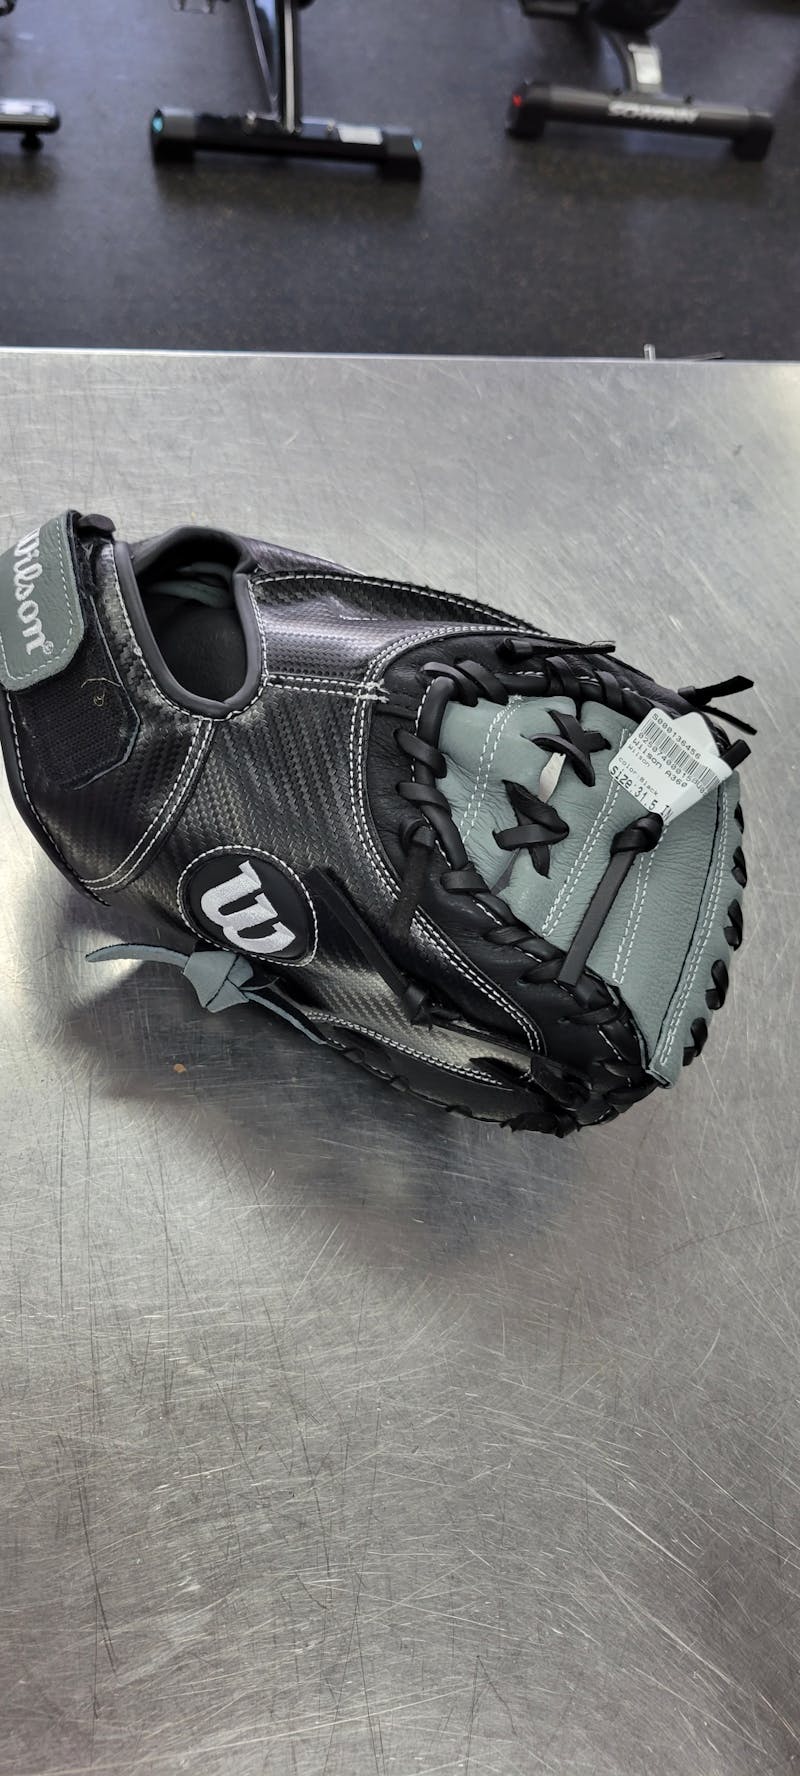 Wilson A360 Catcher's Baseball Mitt/Glove - 31.5